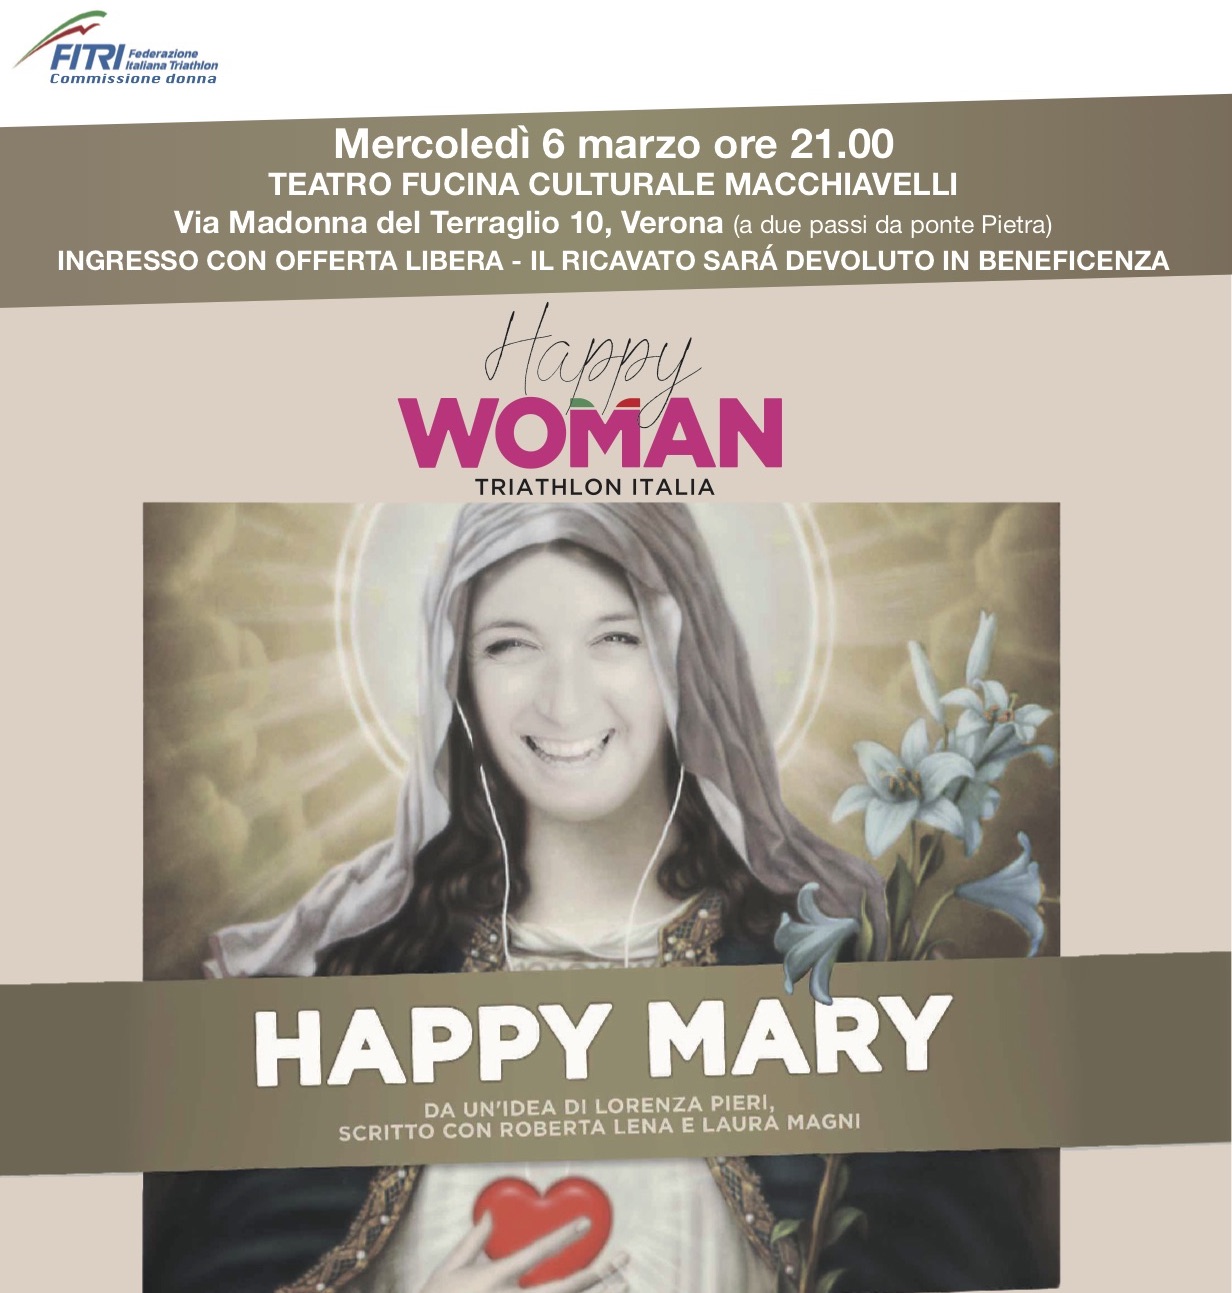 Happy Mary: lo spettacolo dedicato alle donne che le invoglia a... fare triathlon